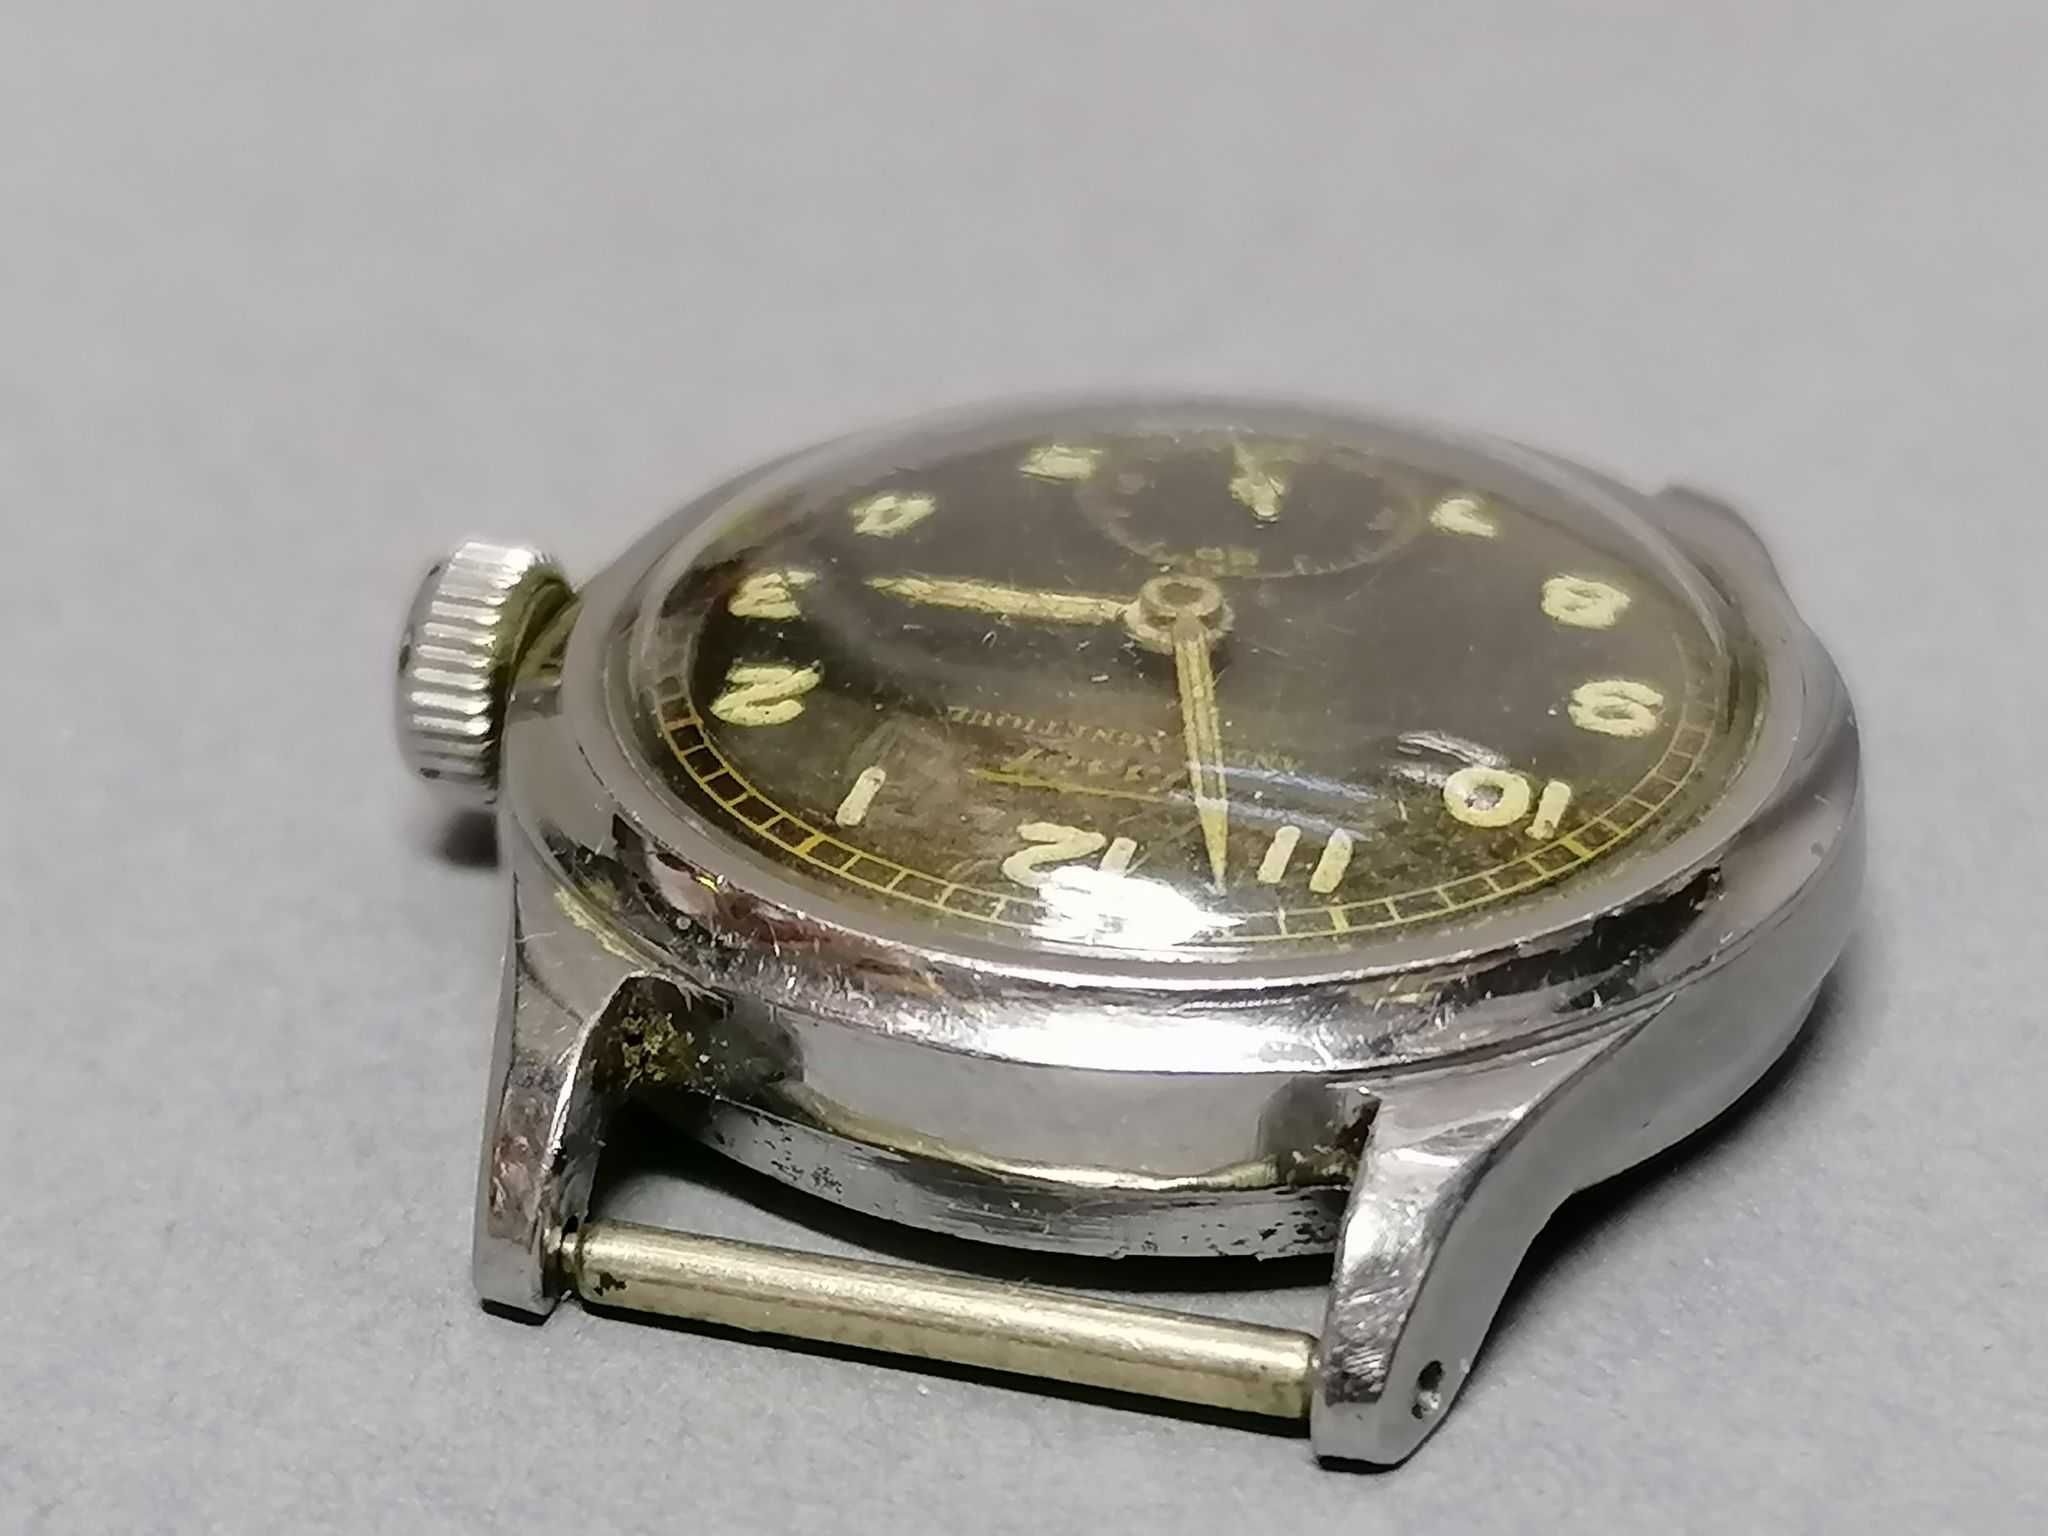 Damski zegarek naręczny, Tissot, lata 40-te